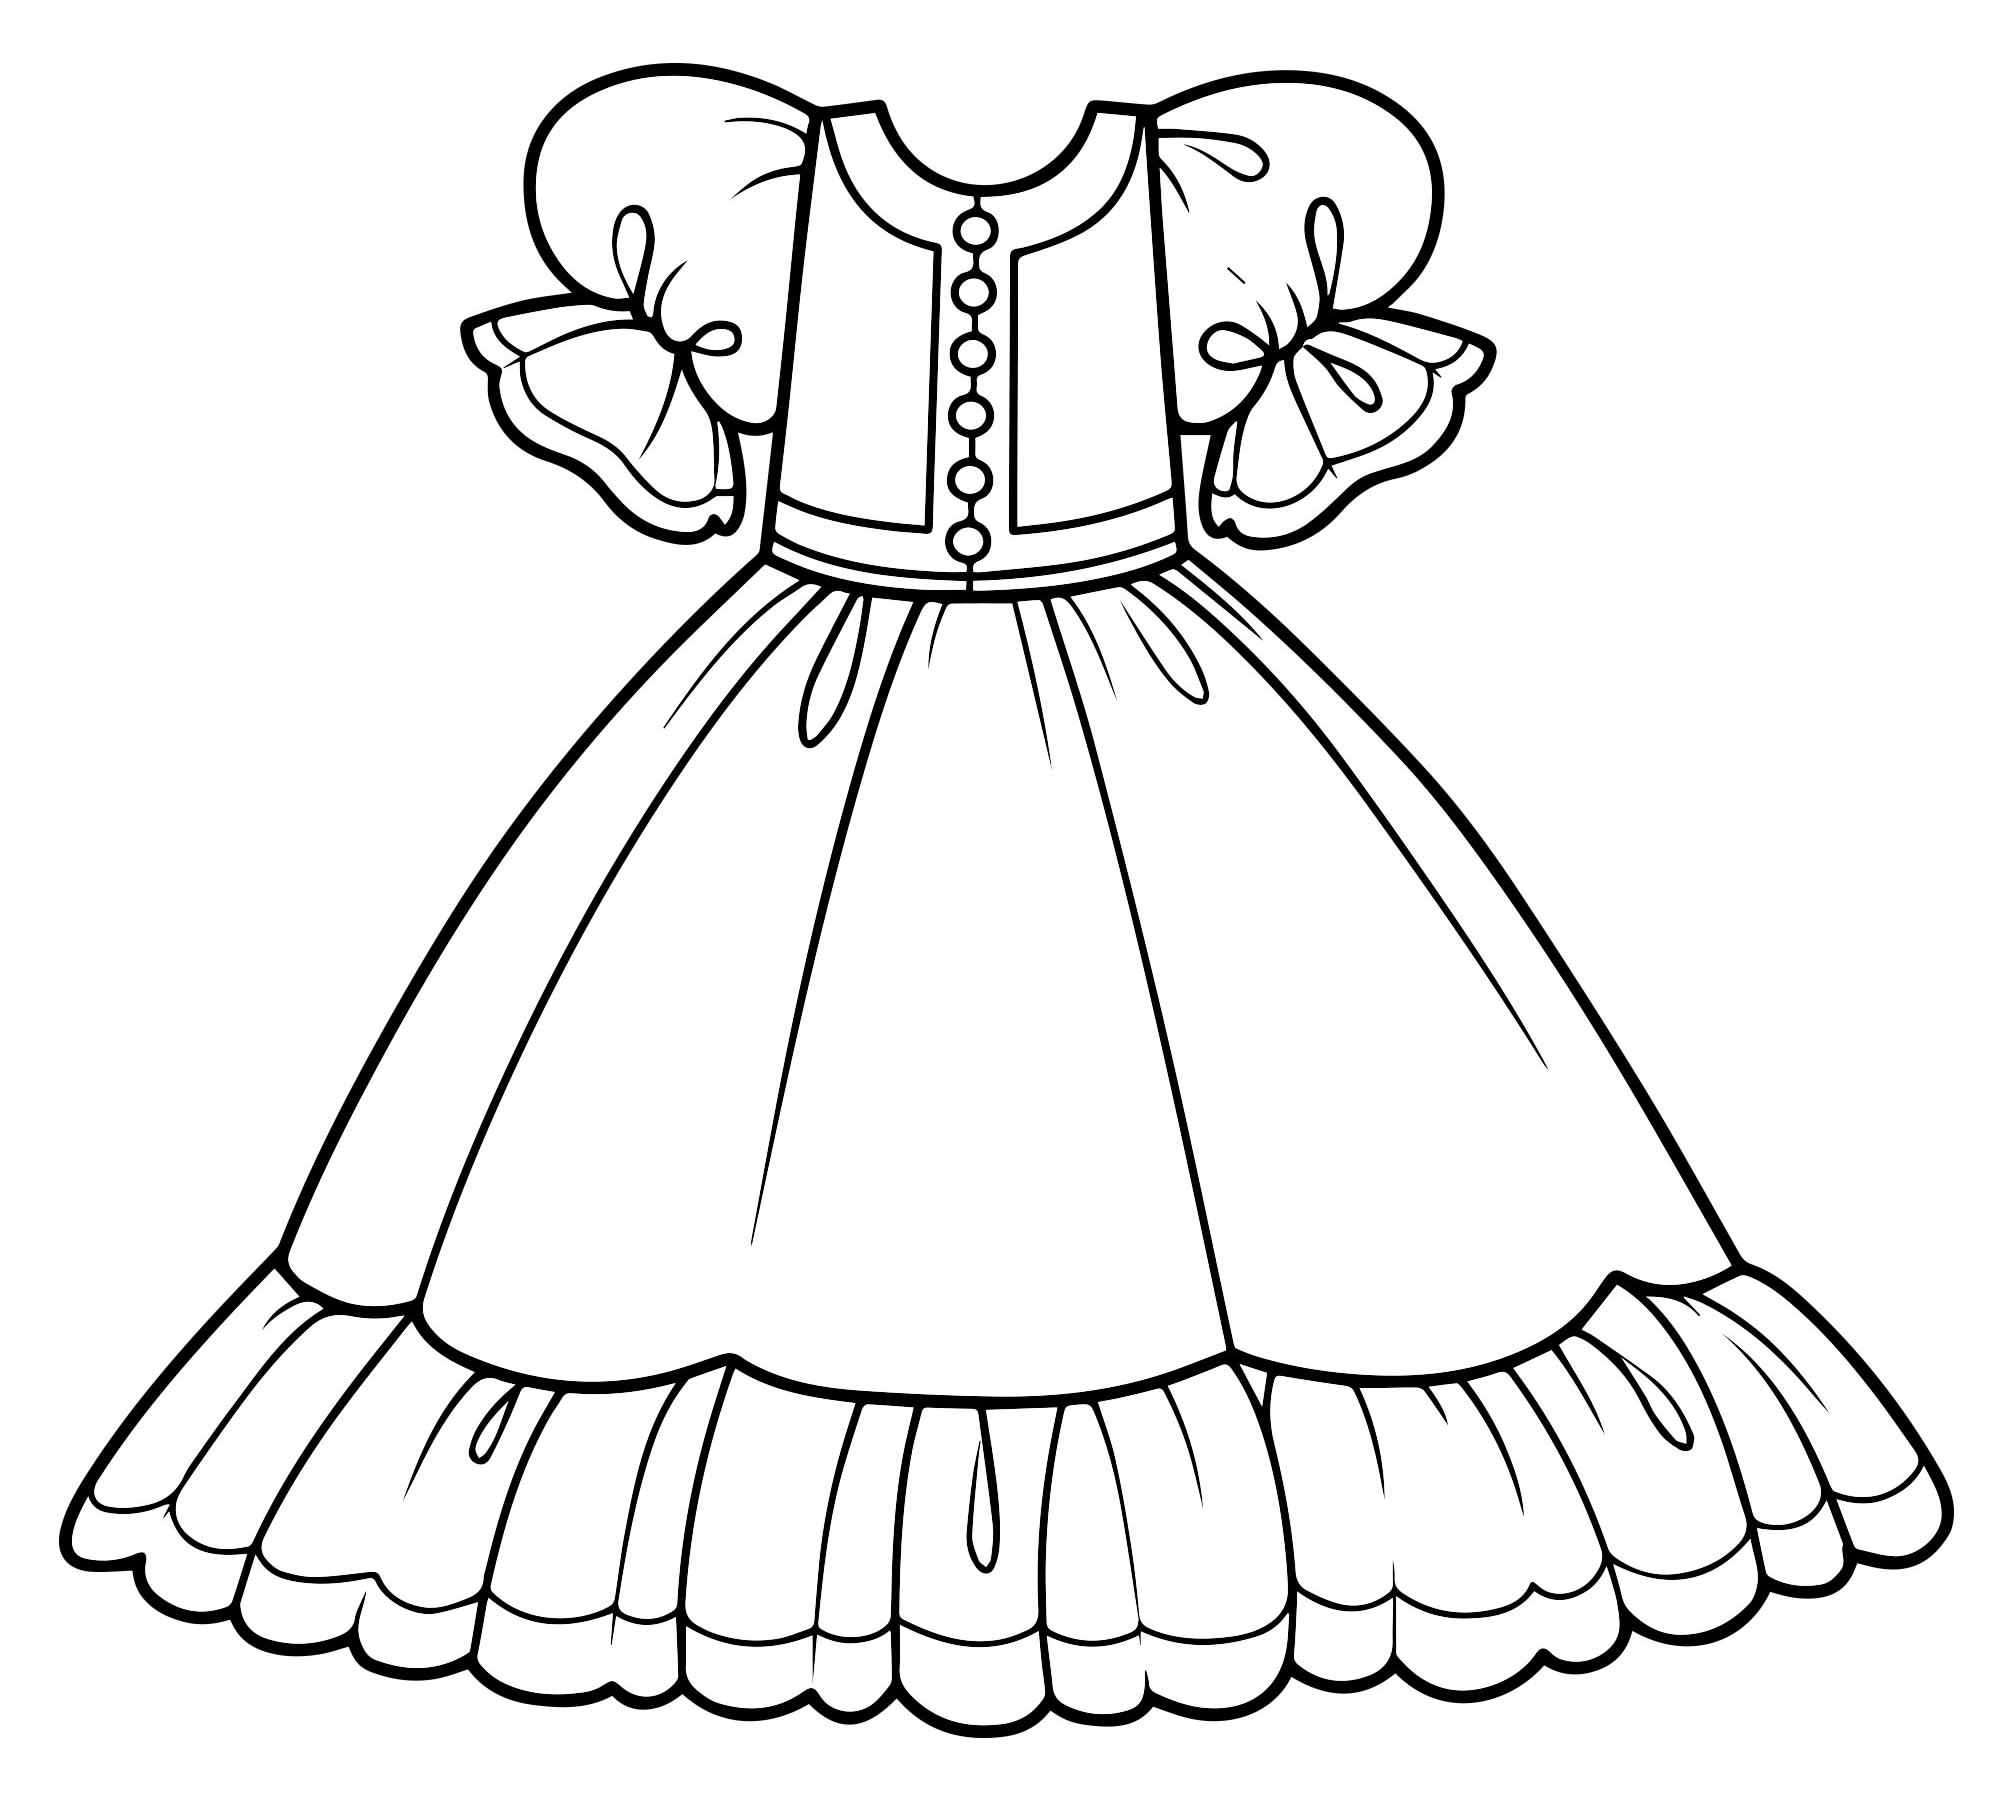 Раскраска барби в платье для девочек распечатать